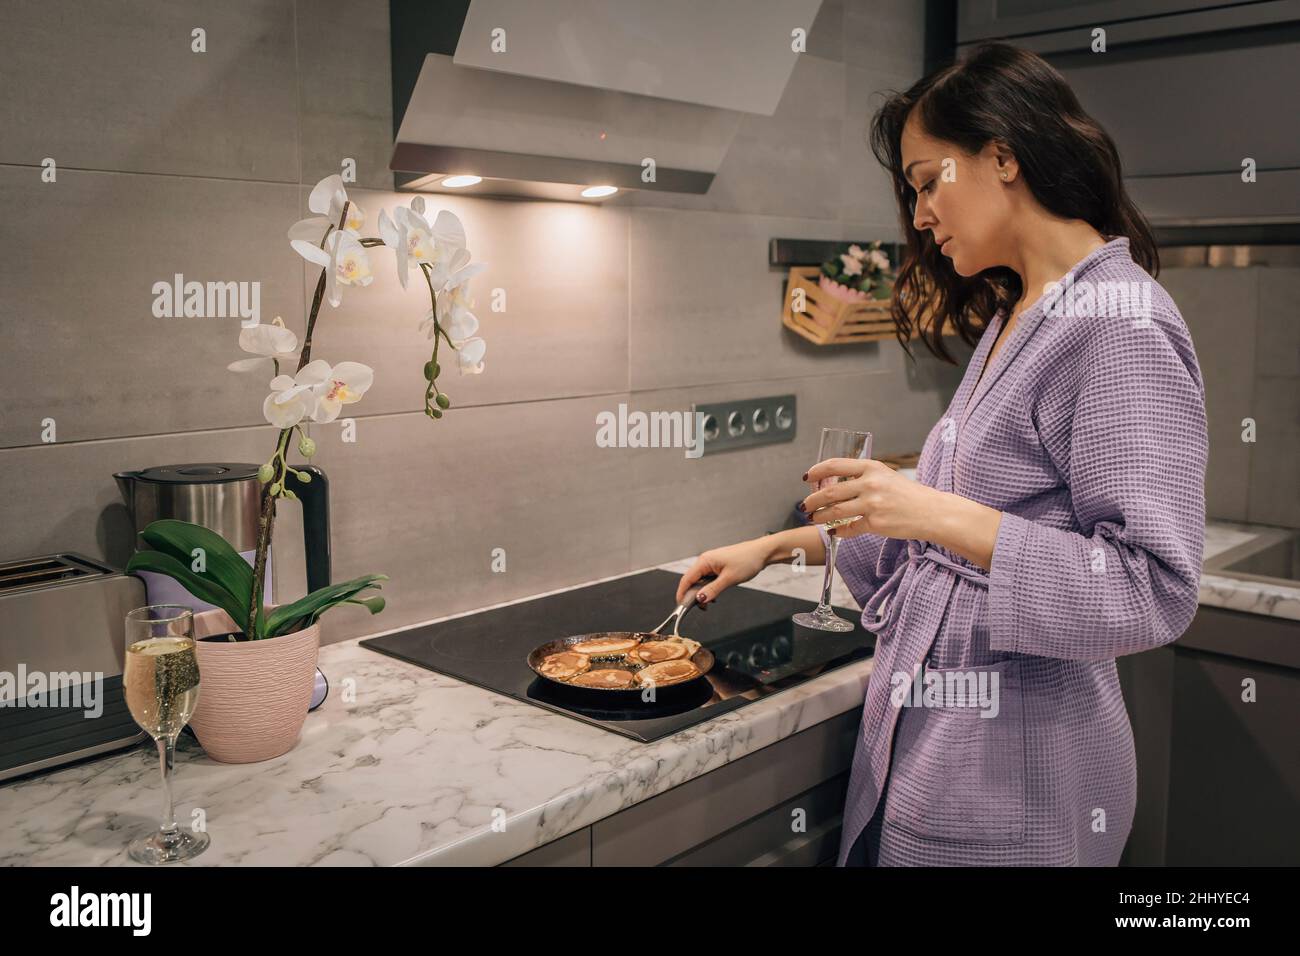 Junge Frauen in der Küche backen Pfannkuchen, Gebäck in der Pfanne auf dem Herd. Lifestyle-Konzept des Kochens zu Hause. Stockfoto